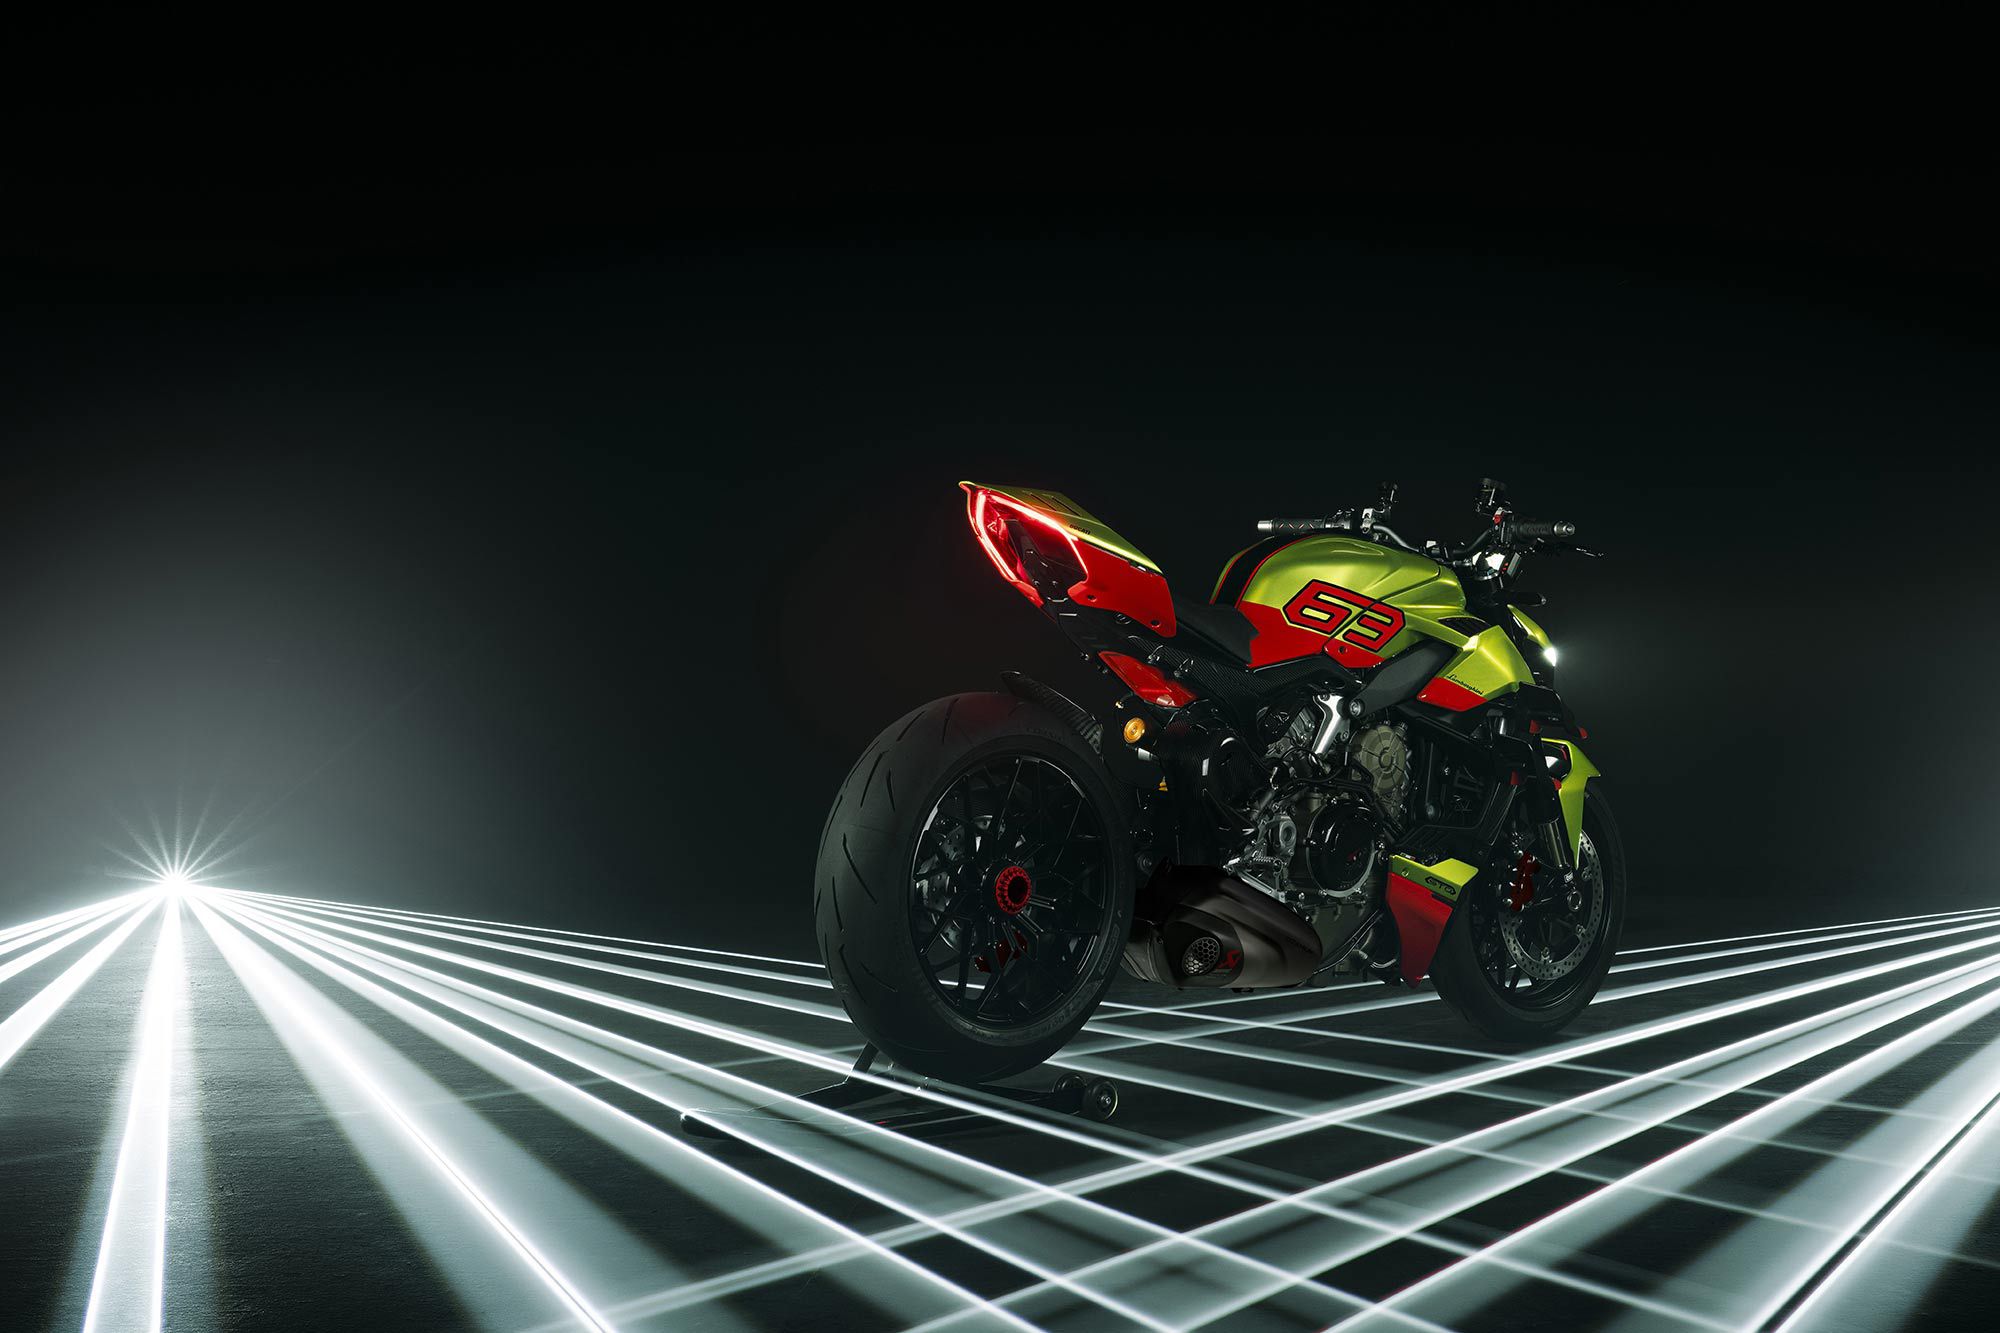 Gratuitous Tron-like shot of the Ducati Streetfighter V4 Lamborghini.